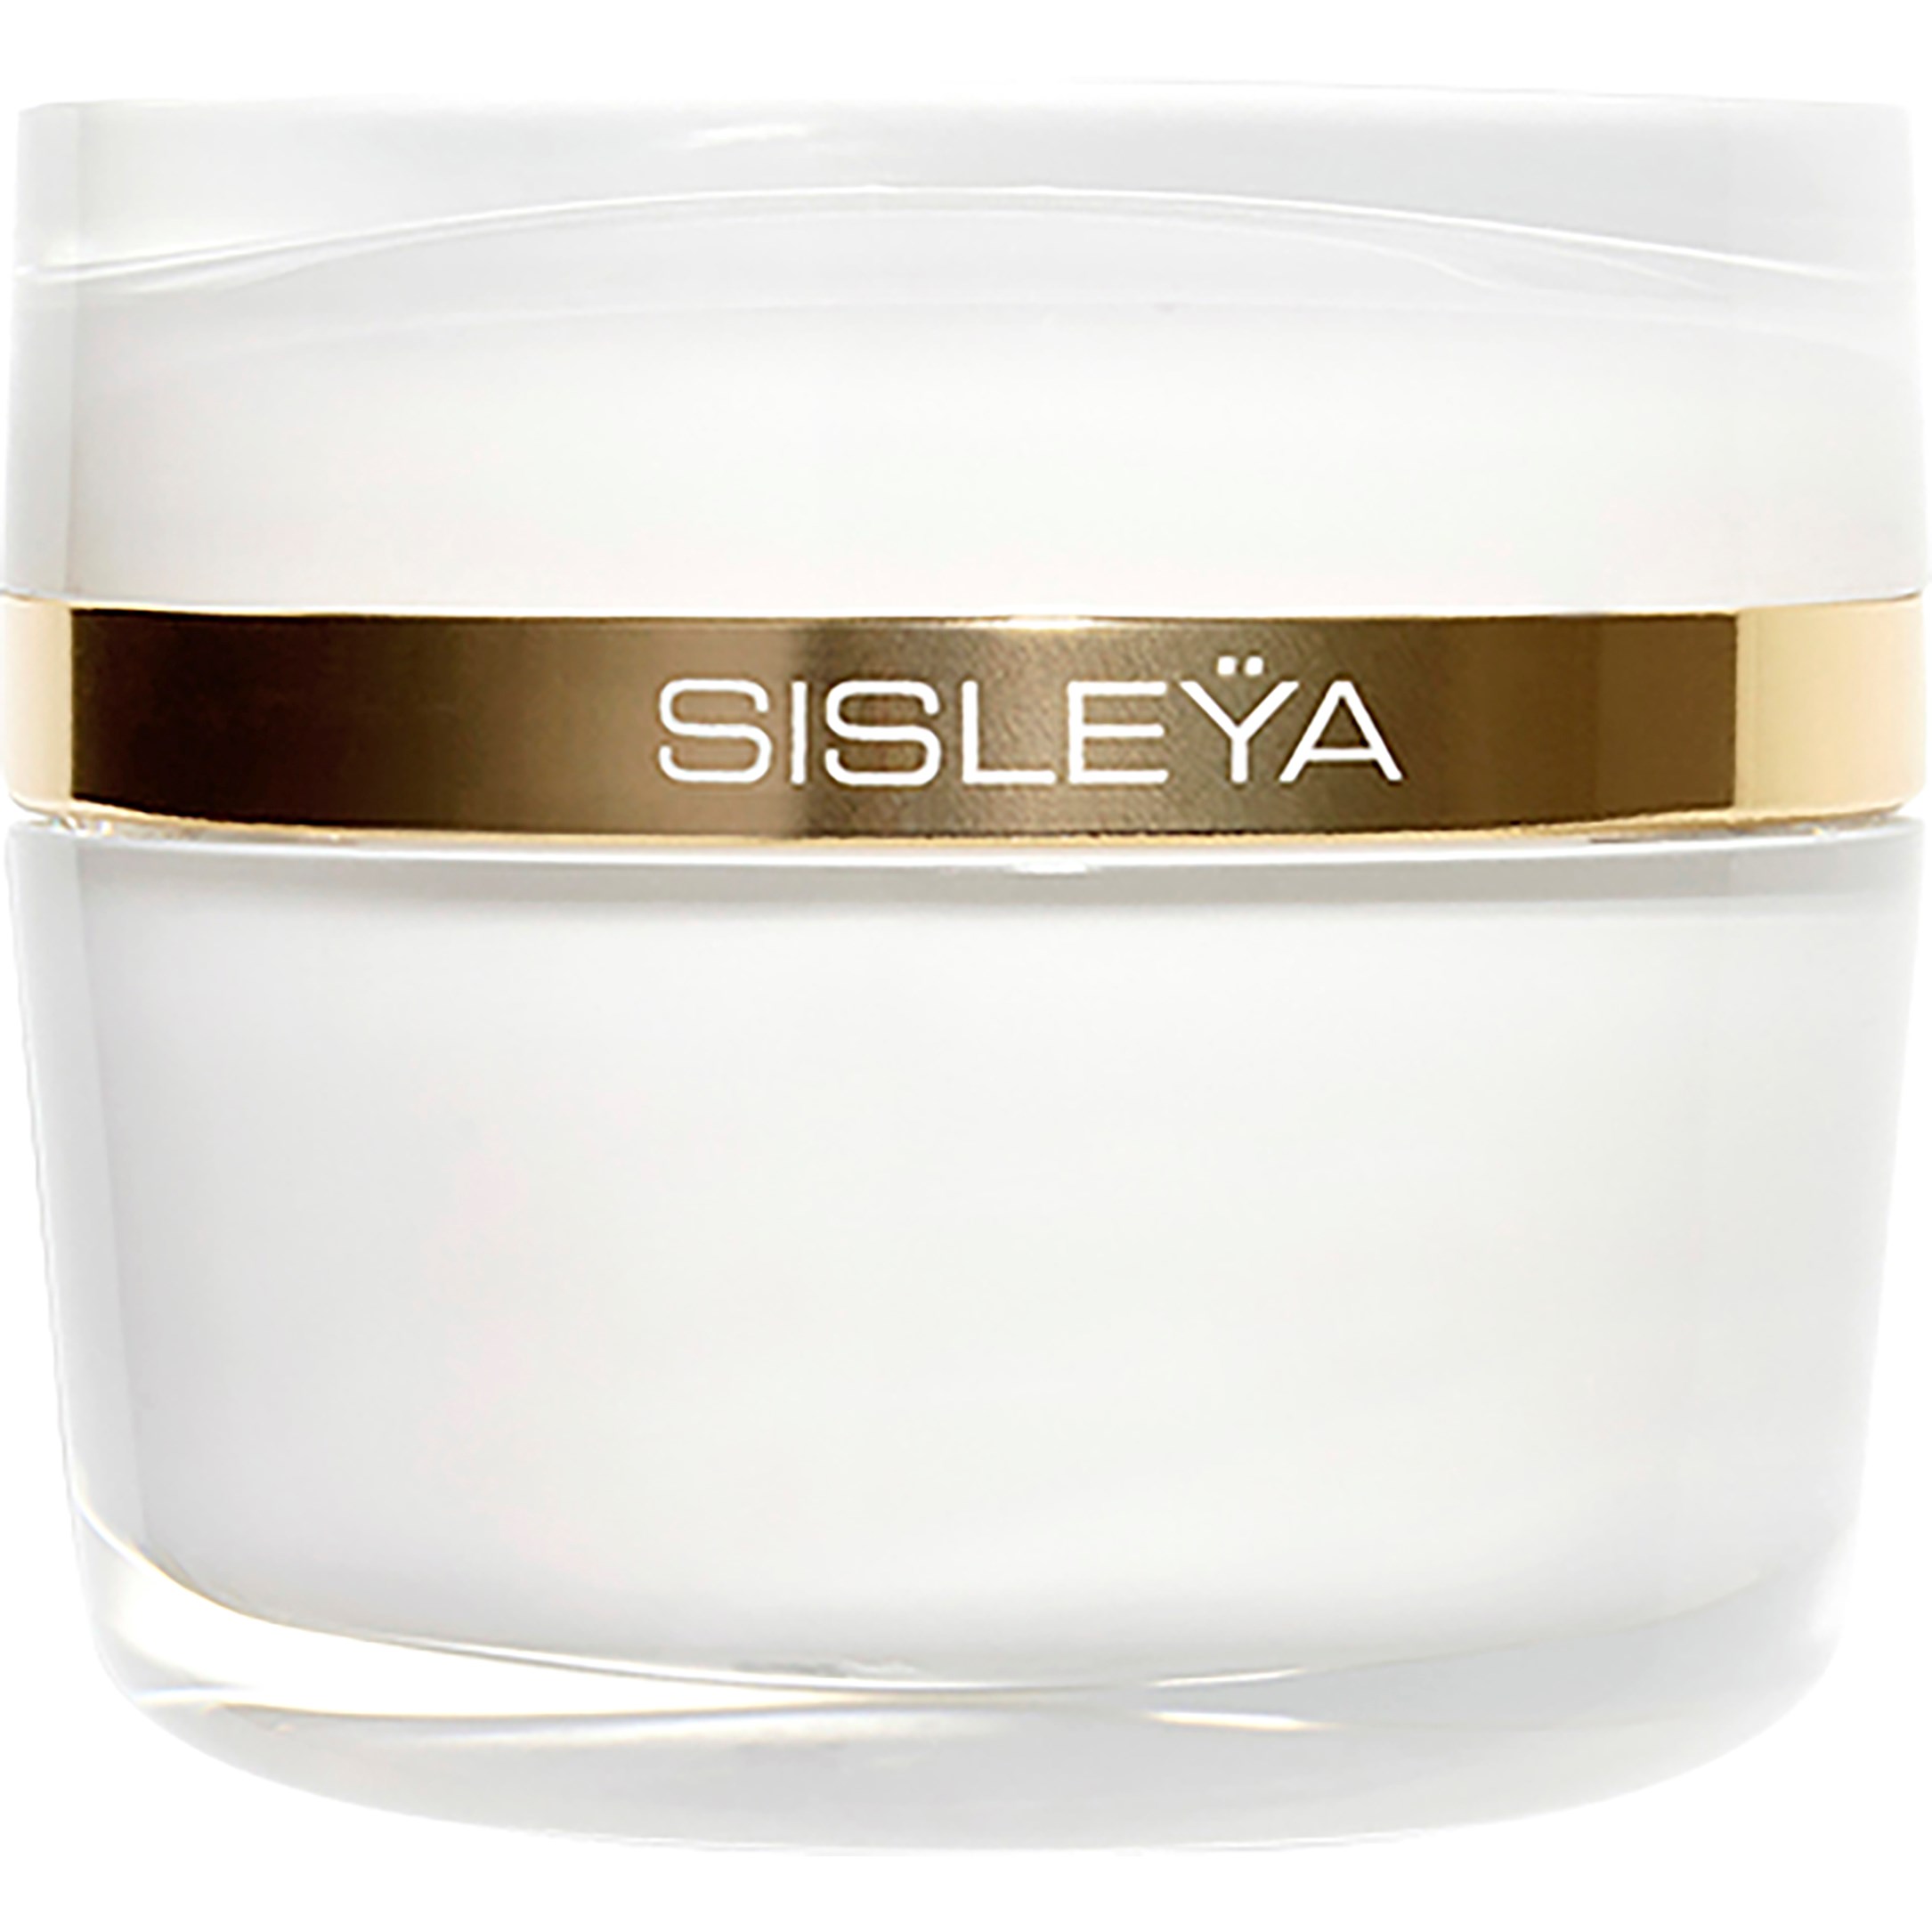 Bilde av Sisley Sisleÿa L'integral Anti-Âge Face Cream 50 Ml